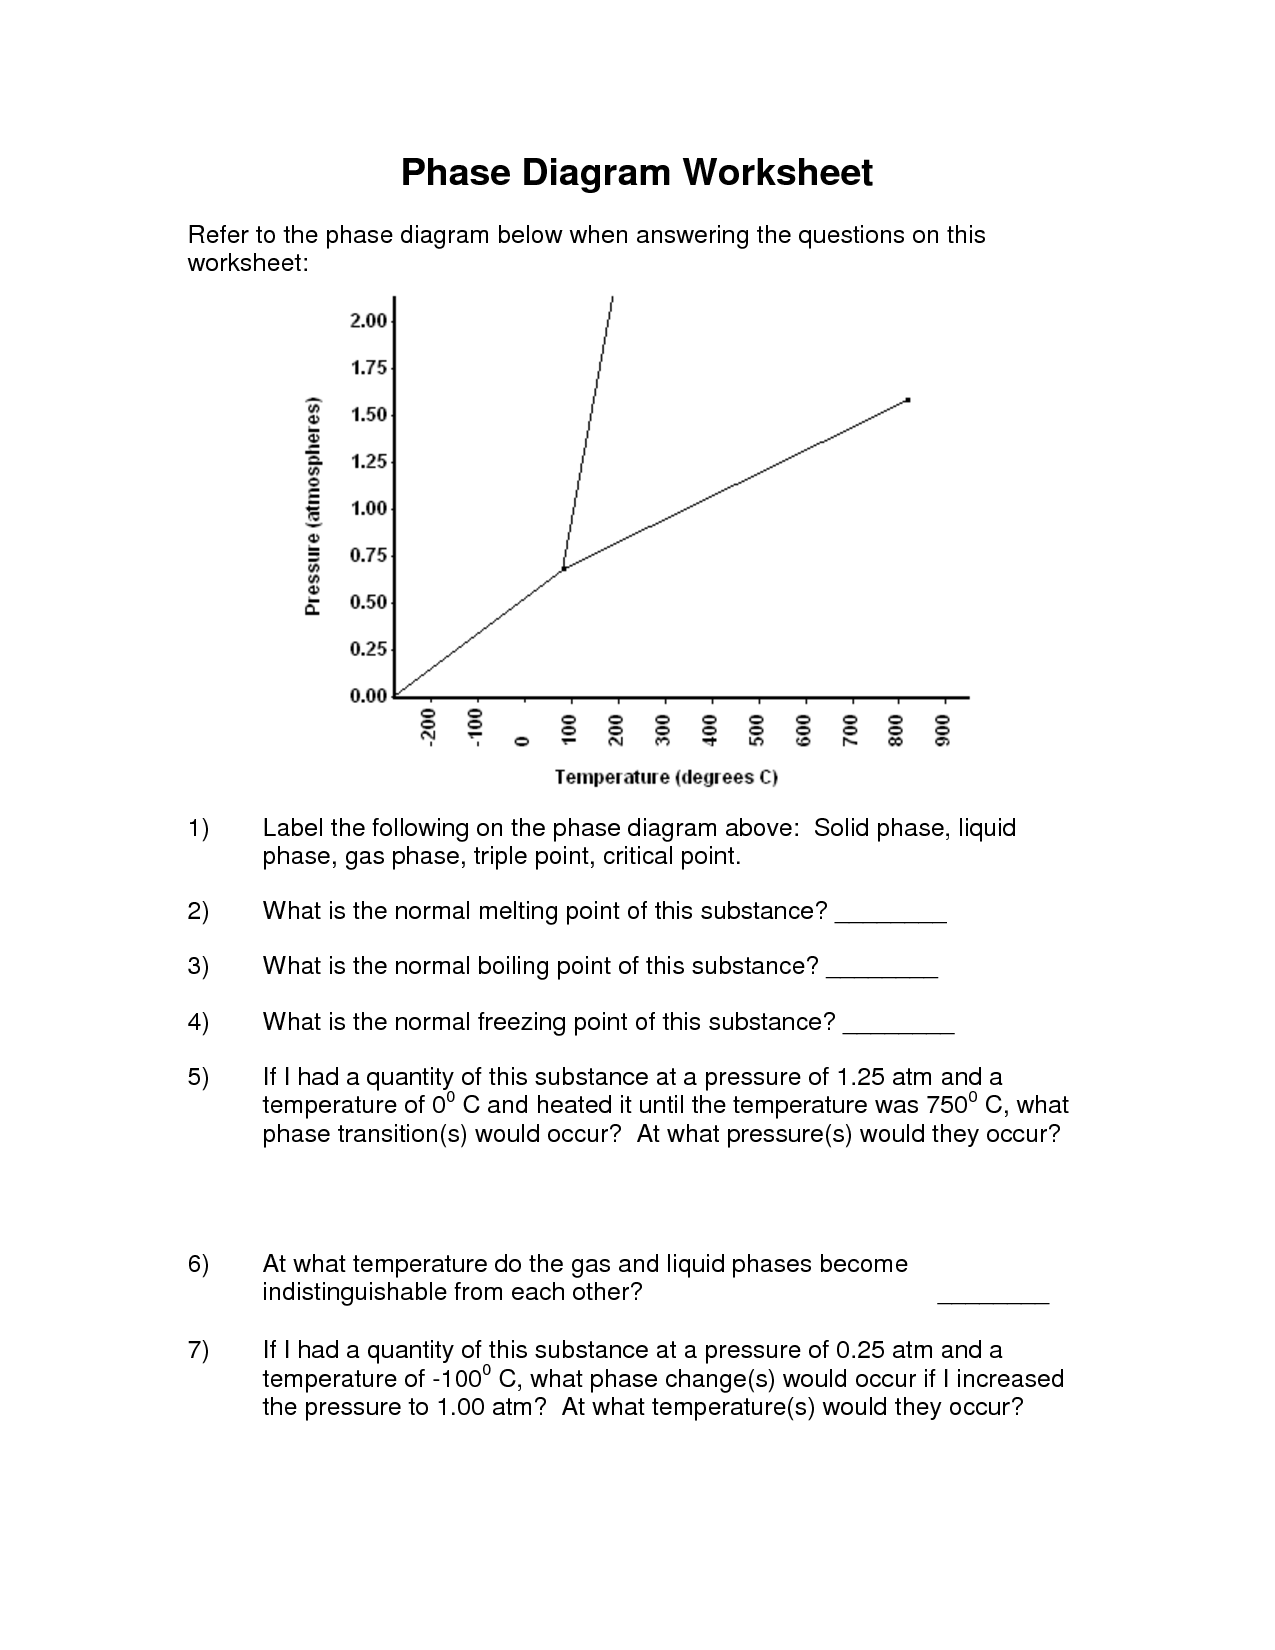 Phase Diagram Worksheet Answer Key